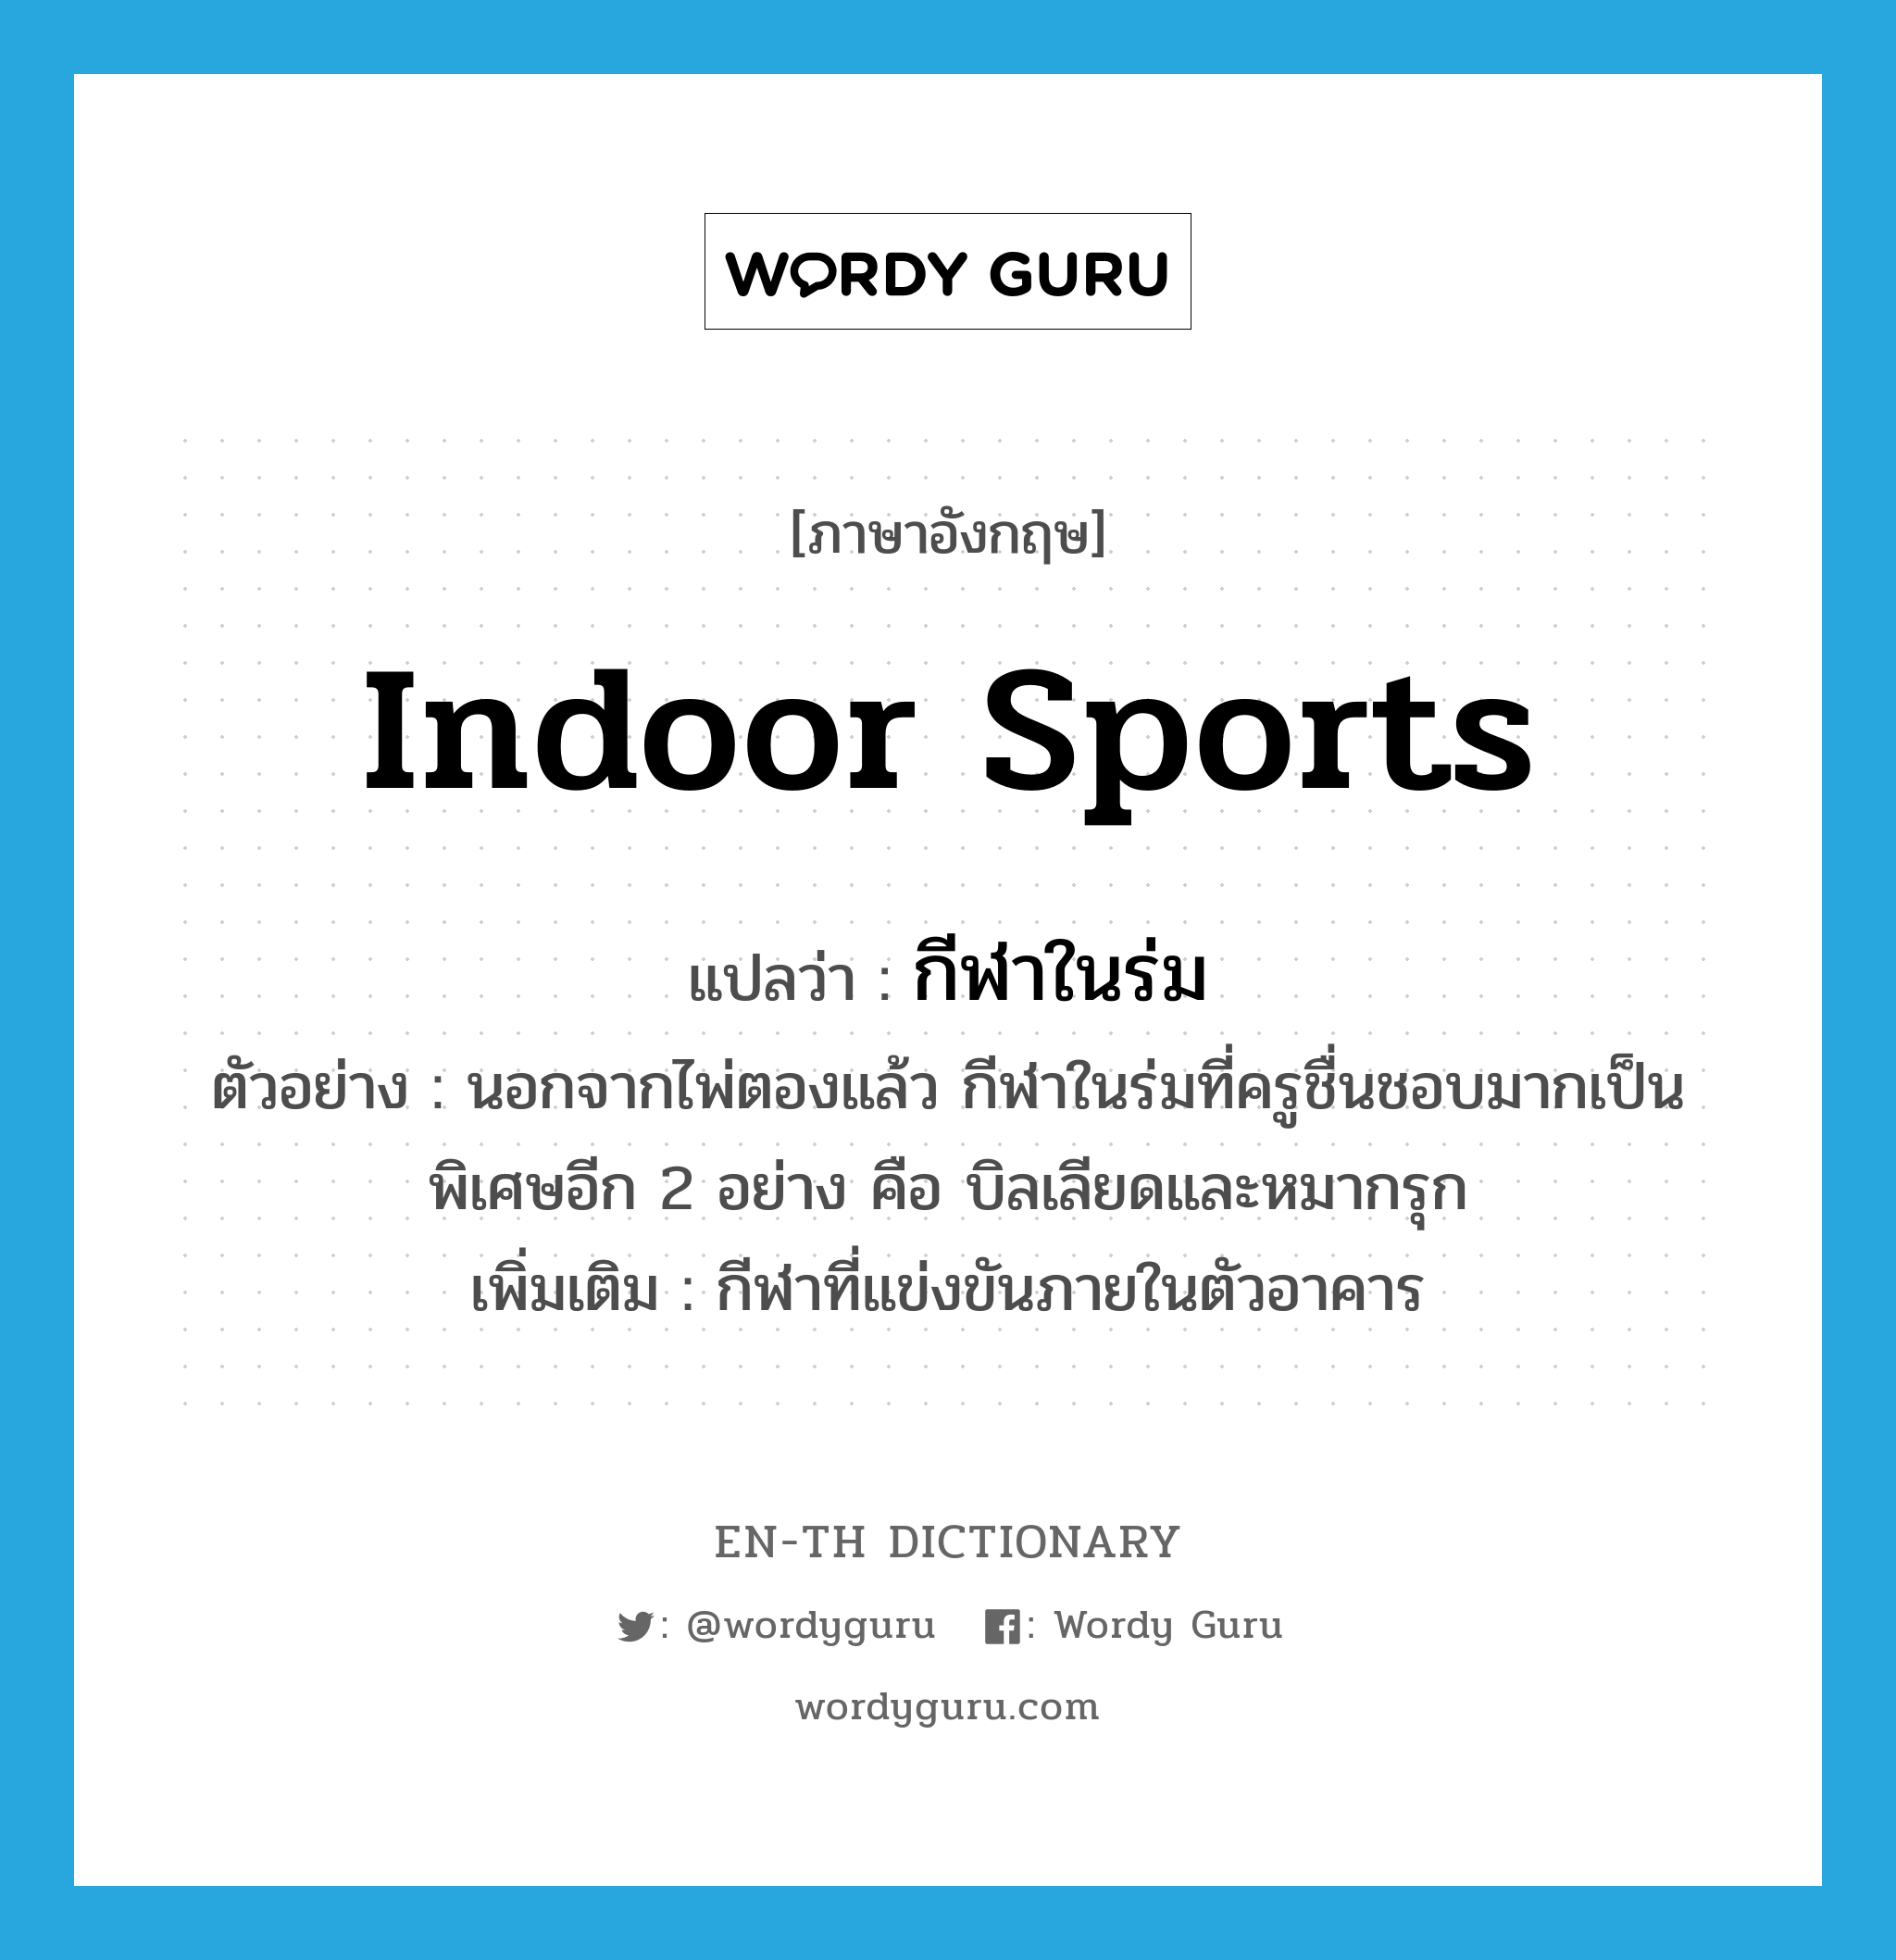 indoor sports แปลว่า?, คำศัพท์ภาษาอังกฤษ indoor sports แปลว่า กีฬาในร่ม ประเภท N ตัวอย่าง นอกจากไพ่ตองแล้ว กีฬาในร่มที่ครูชื่นชอบมากเป็นพิเศษอีก 2 อย่าง คือ บิลเลียดและหมากรุก เพิ่มเติม กีฬาที่แข่งขันภายในตัวอาคาร หมวด N